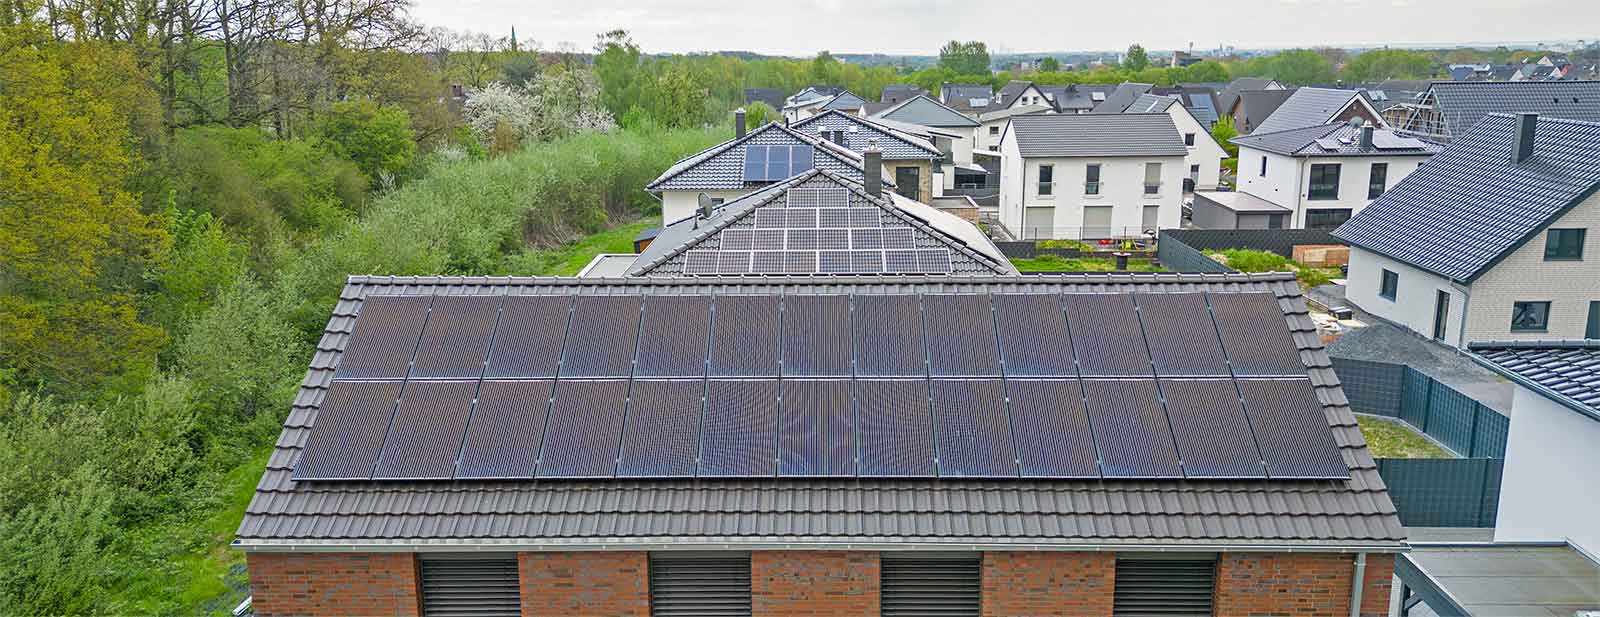 Ein Photovoltaikanlage auf einem Dach eines Einfamilienhauses in Hamm